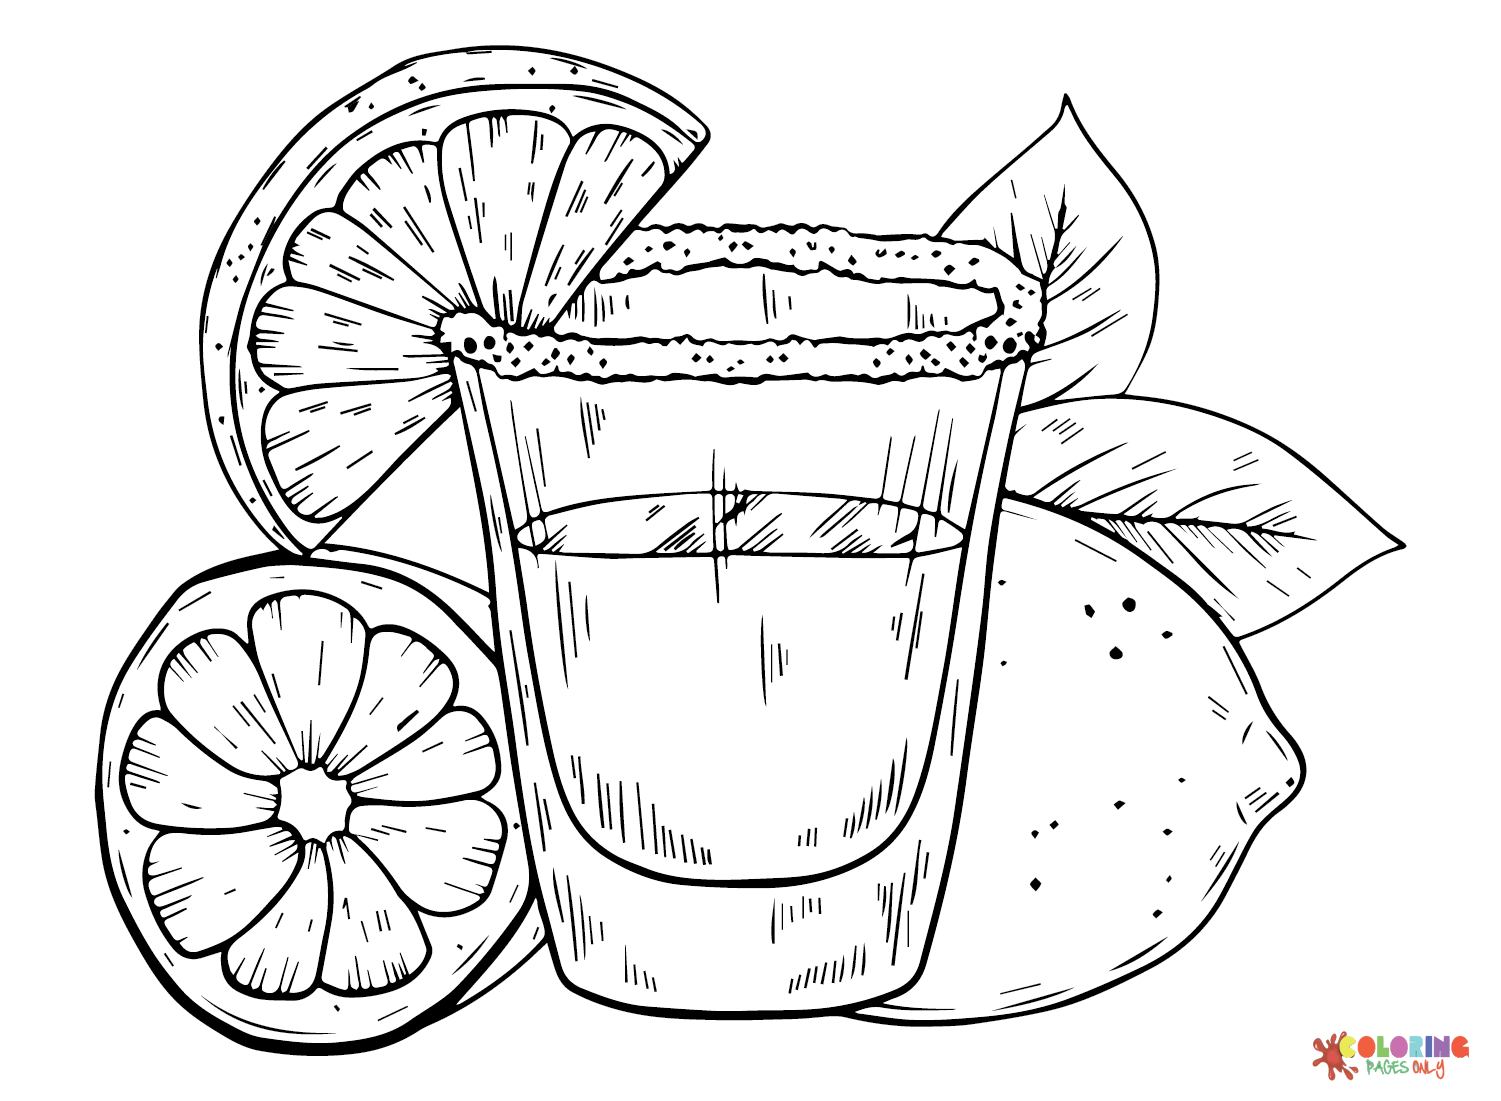 Lemon Juice from Citrus-fruits